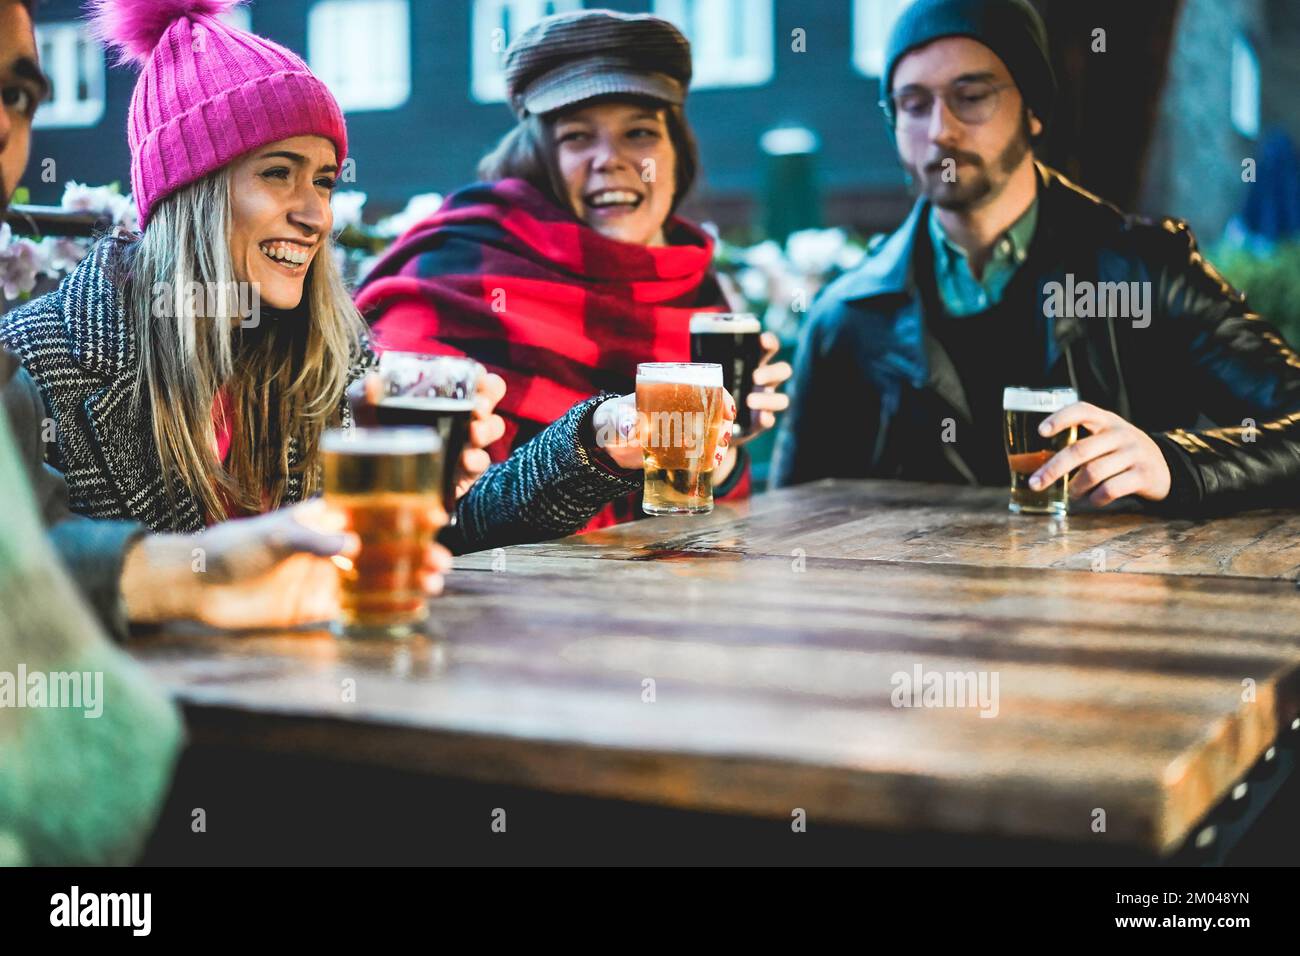 Junge Leute, die Spaß beim Biertrinken im Pub-Restaurant haben - Weiches Augenmerk auf das linke Mädchengesicht Stockfoto